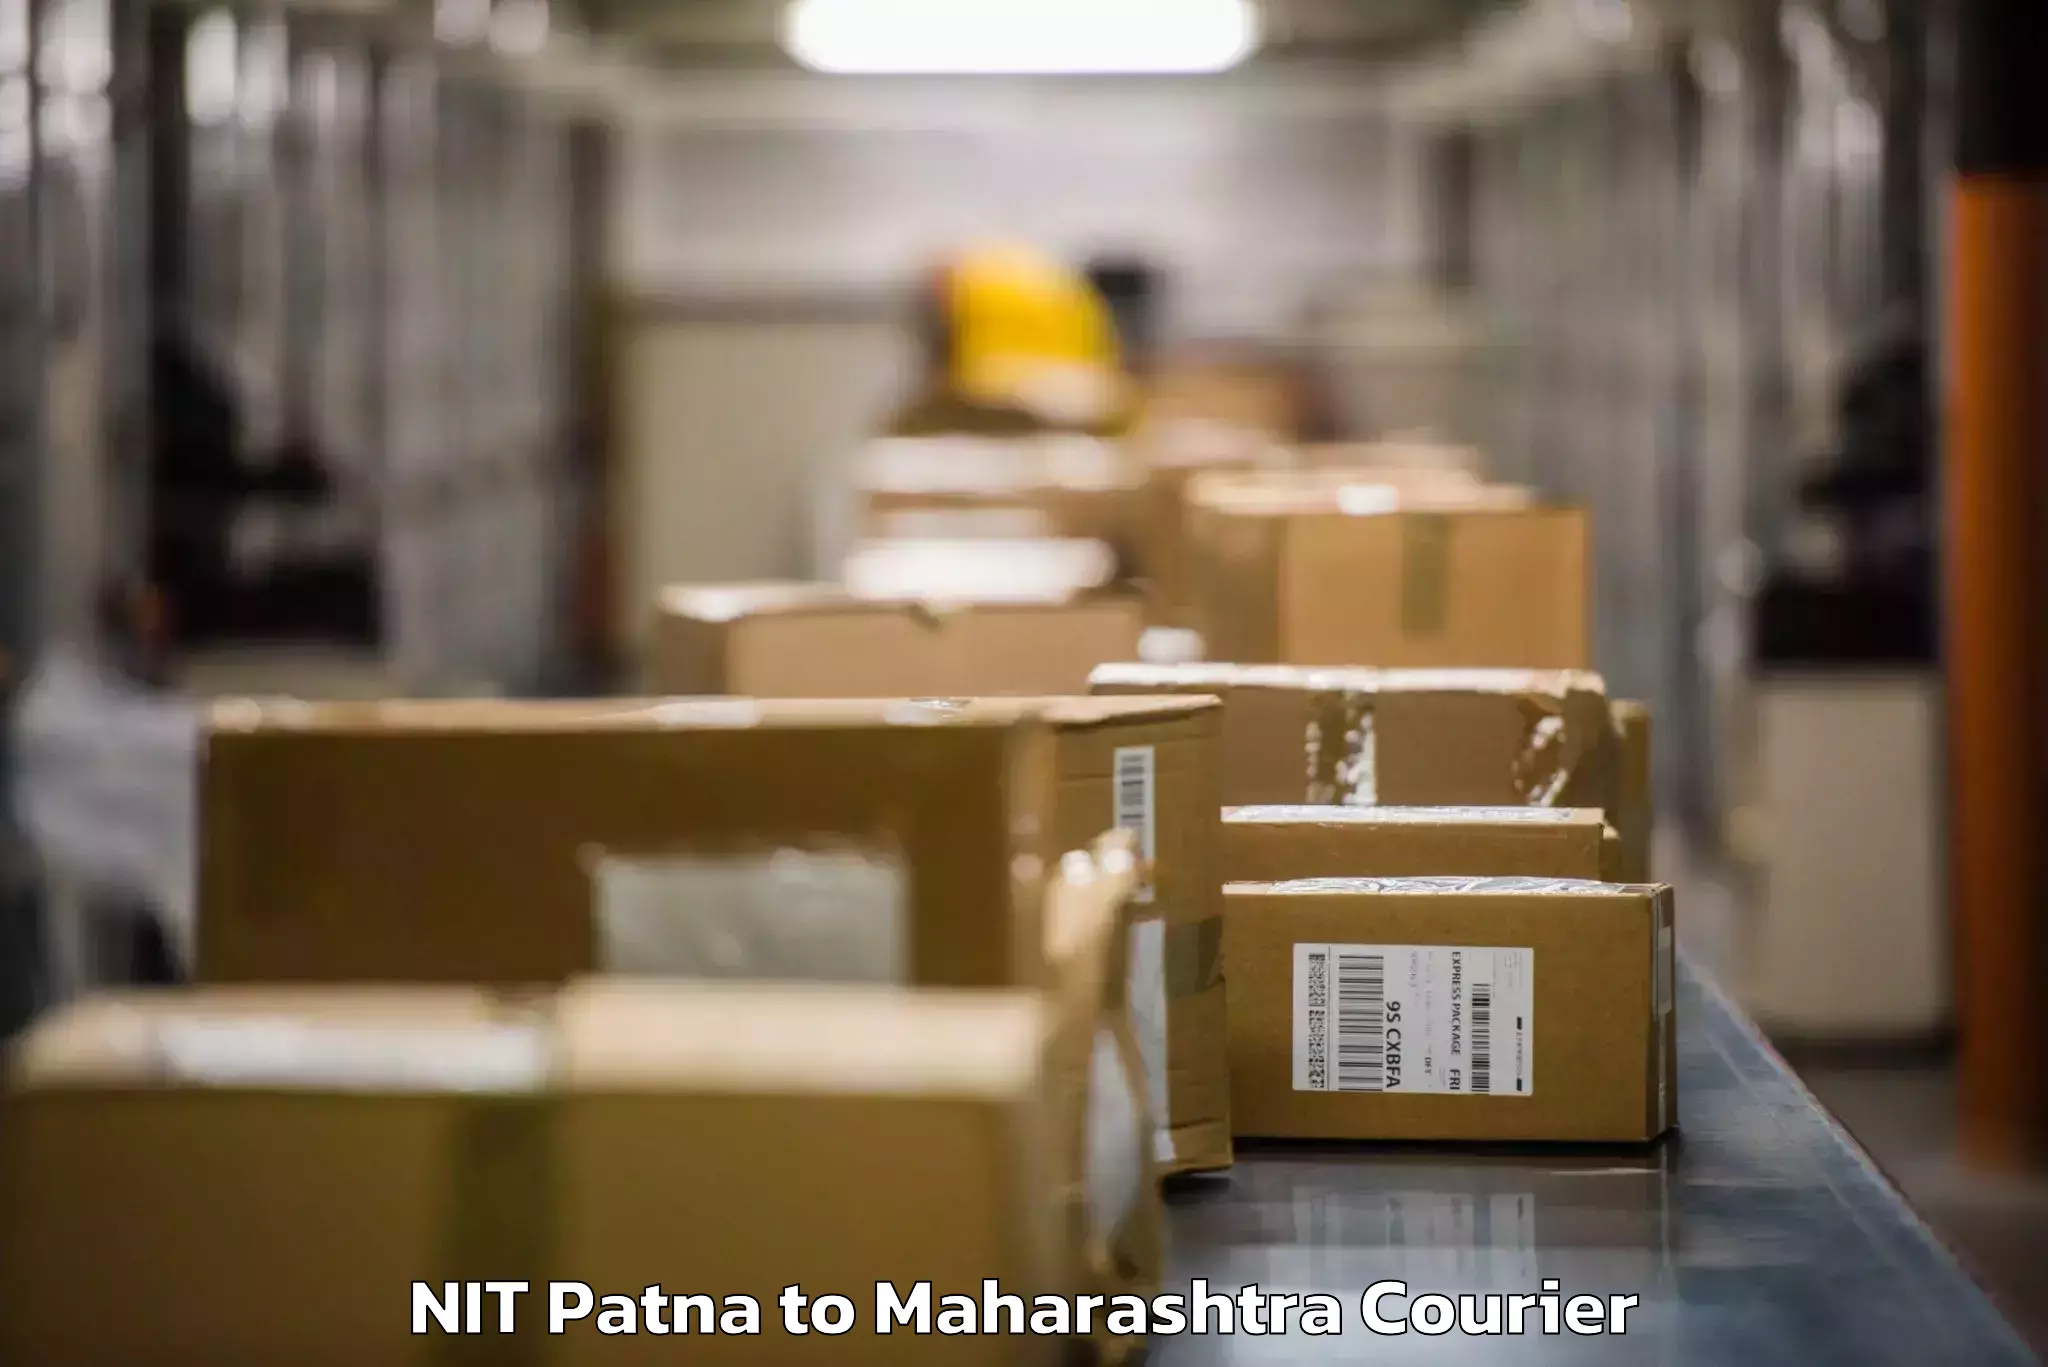 Baggage shipping experience NIT Patna to Walchandnagar